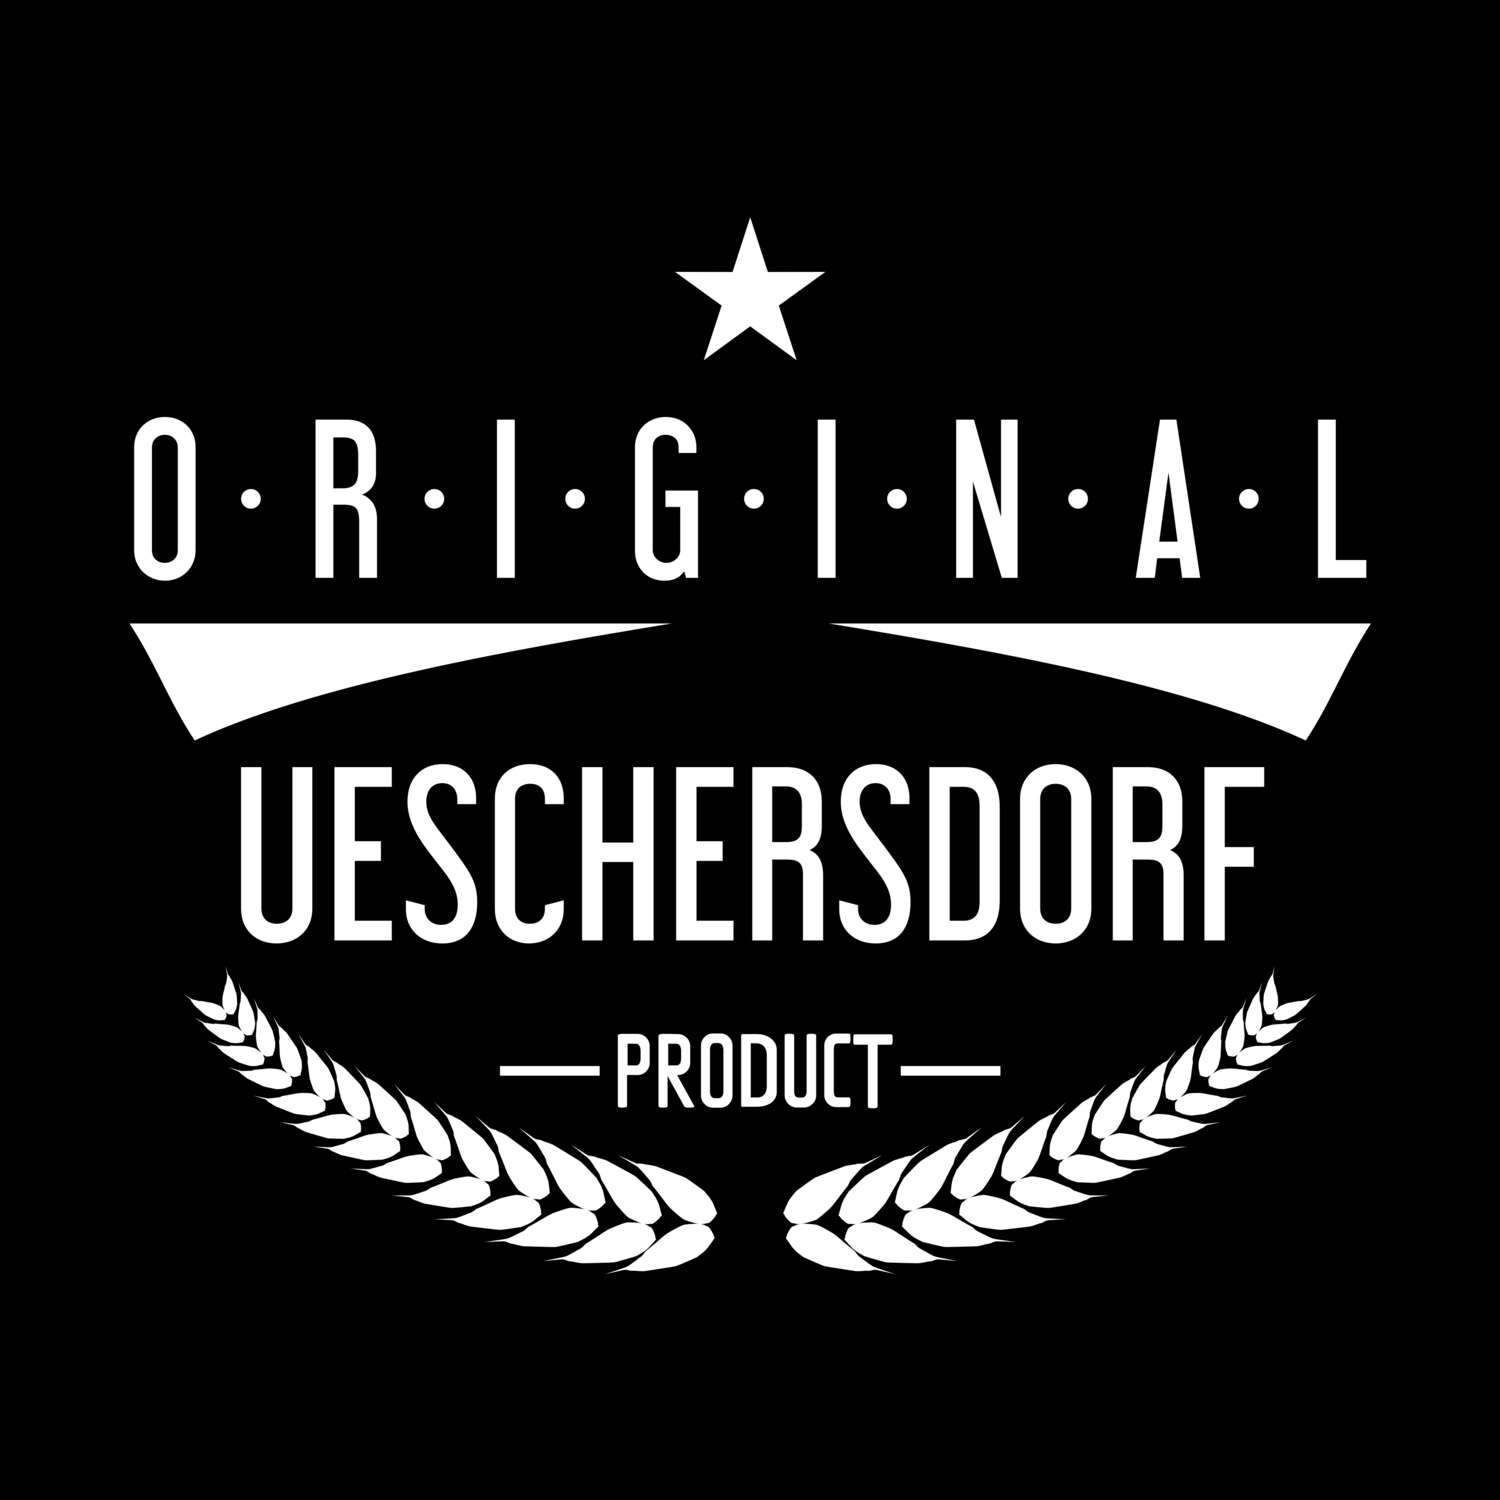 Ueschersdorf T-Shirt »Original Product«